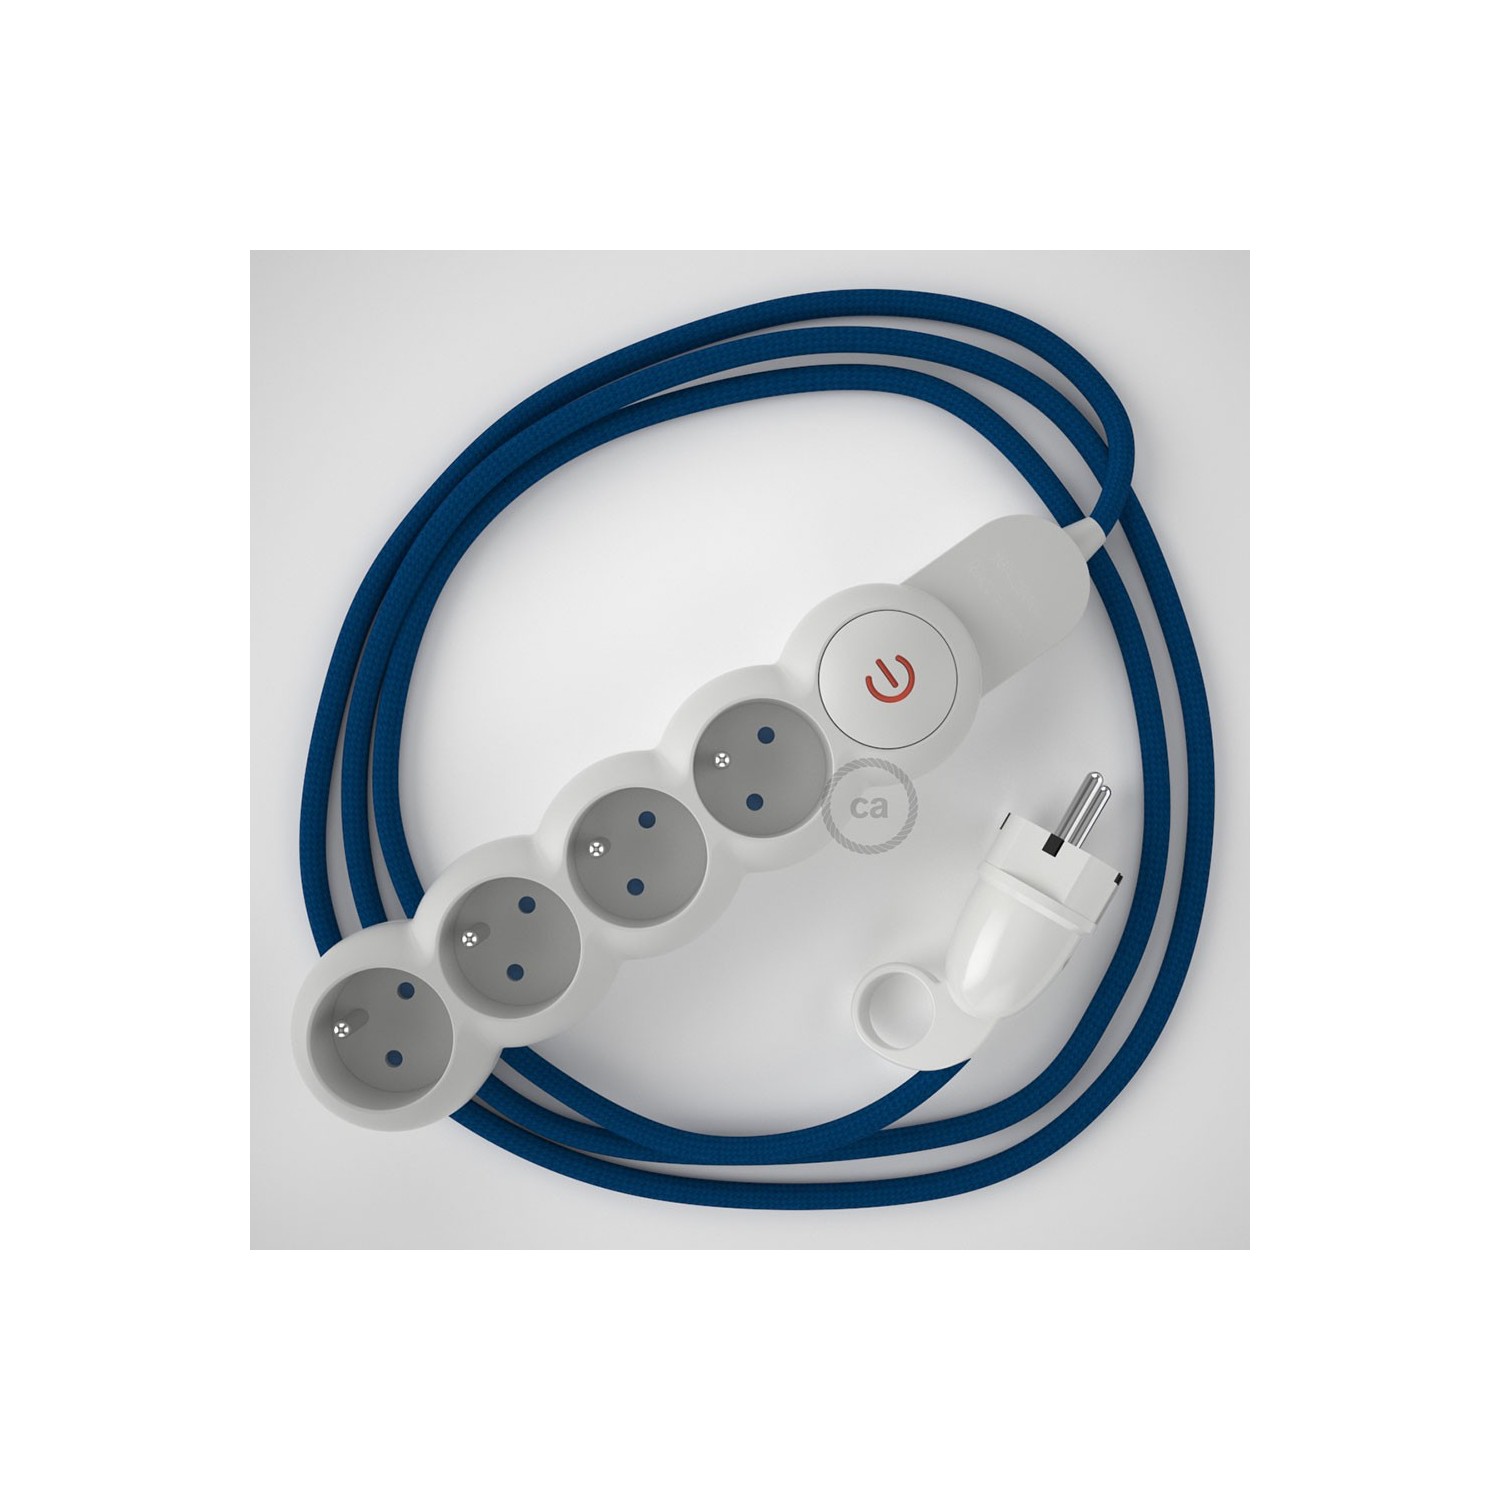 Stekkerdoos met strijkijzersnoer van blauwe viscose RM12 en randaarde stekker met comfortabele "ring" grip